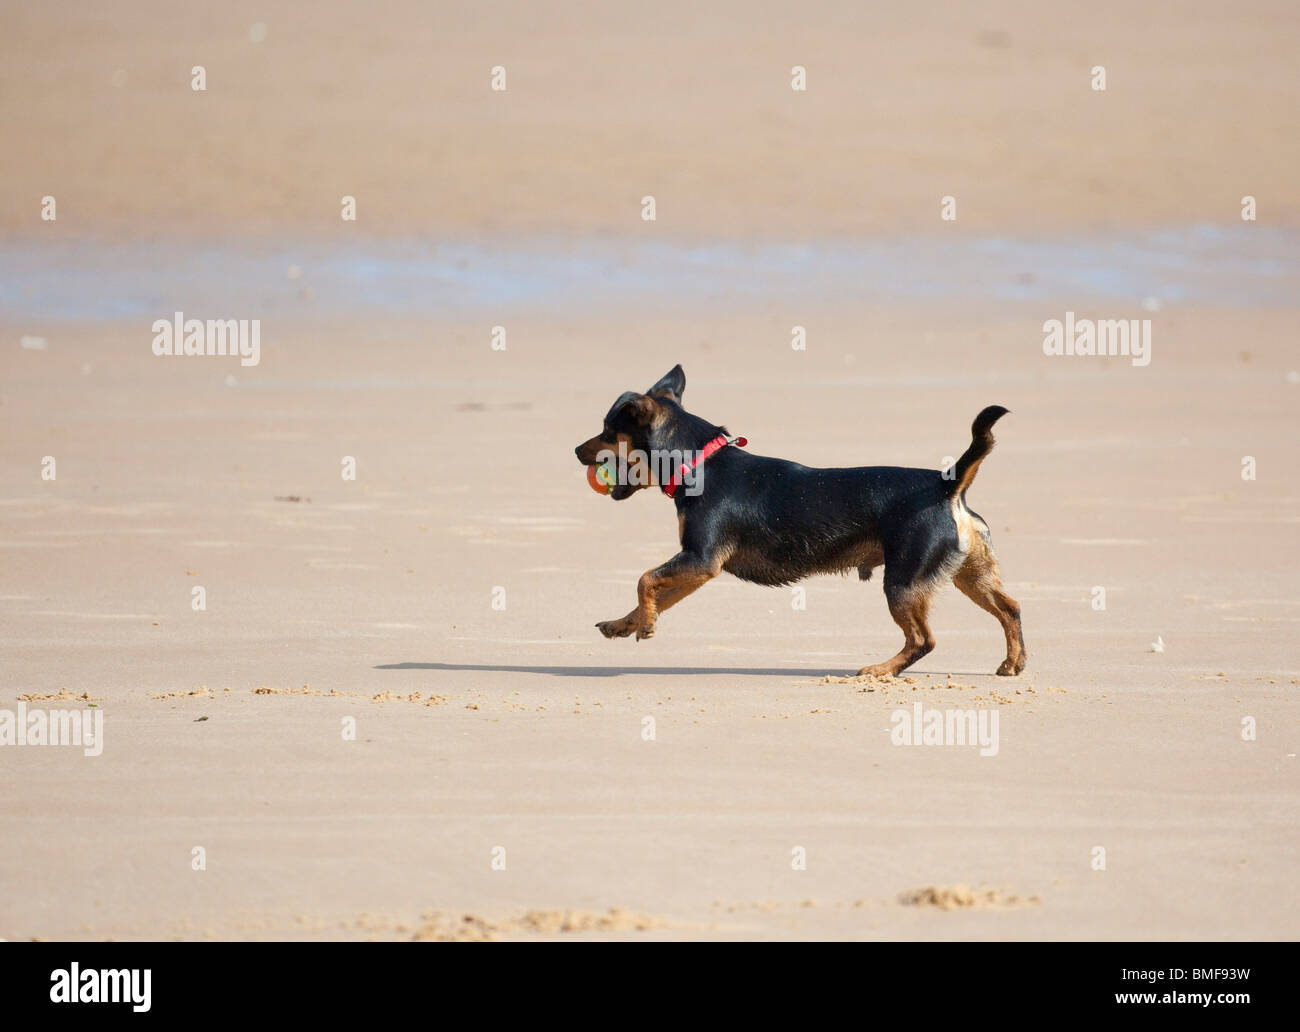 dog running on beach UK Stock Photo